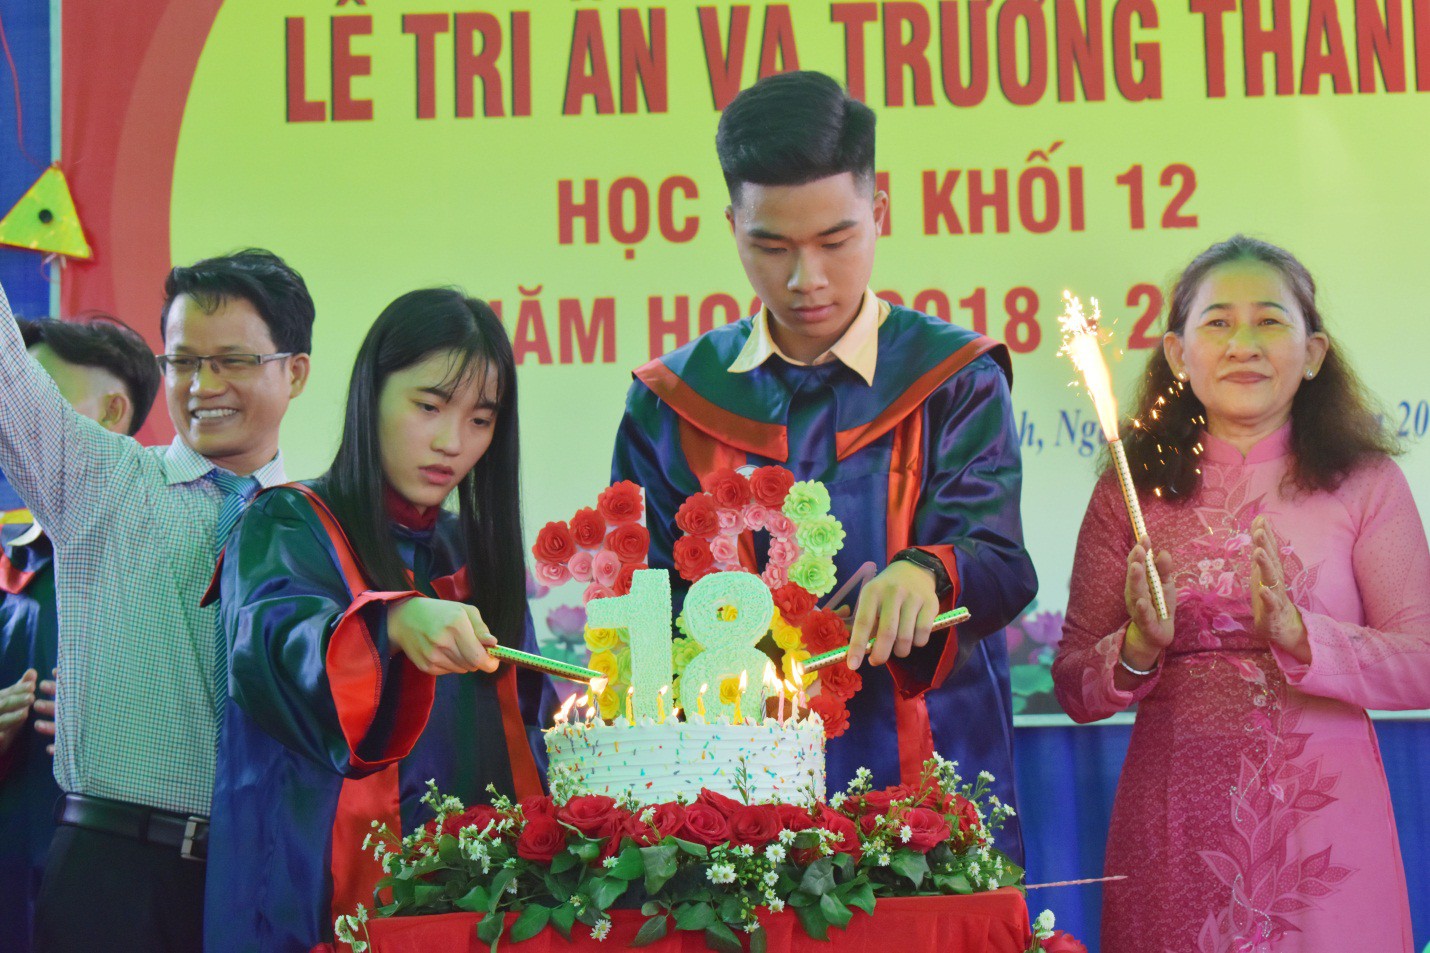 Nước mắt xen lẫn niềm vui trong lễ tri ân và trưởng thành của teen Mỹ Việt - Ảnh 9.